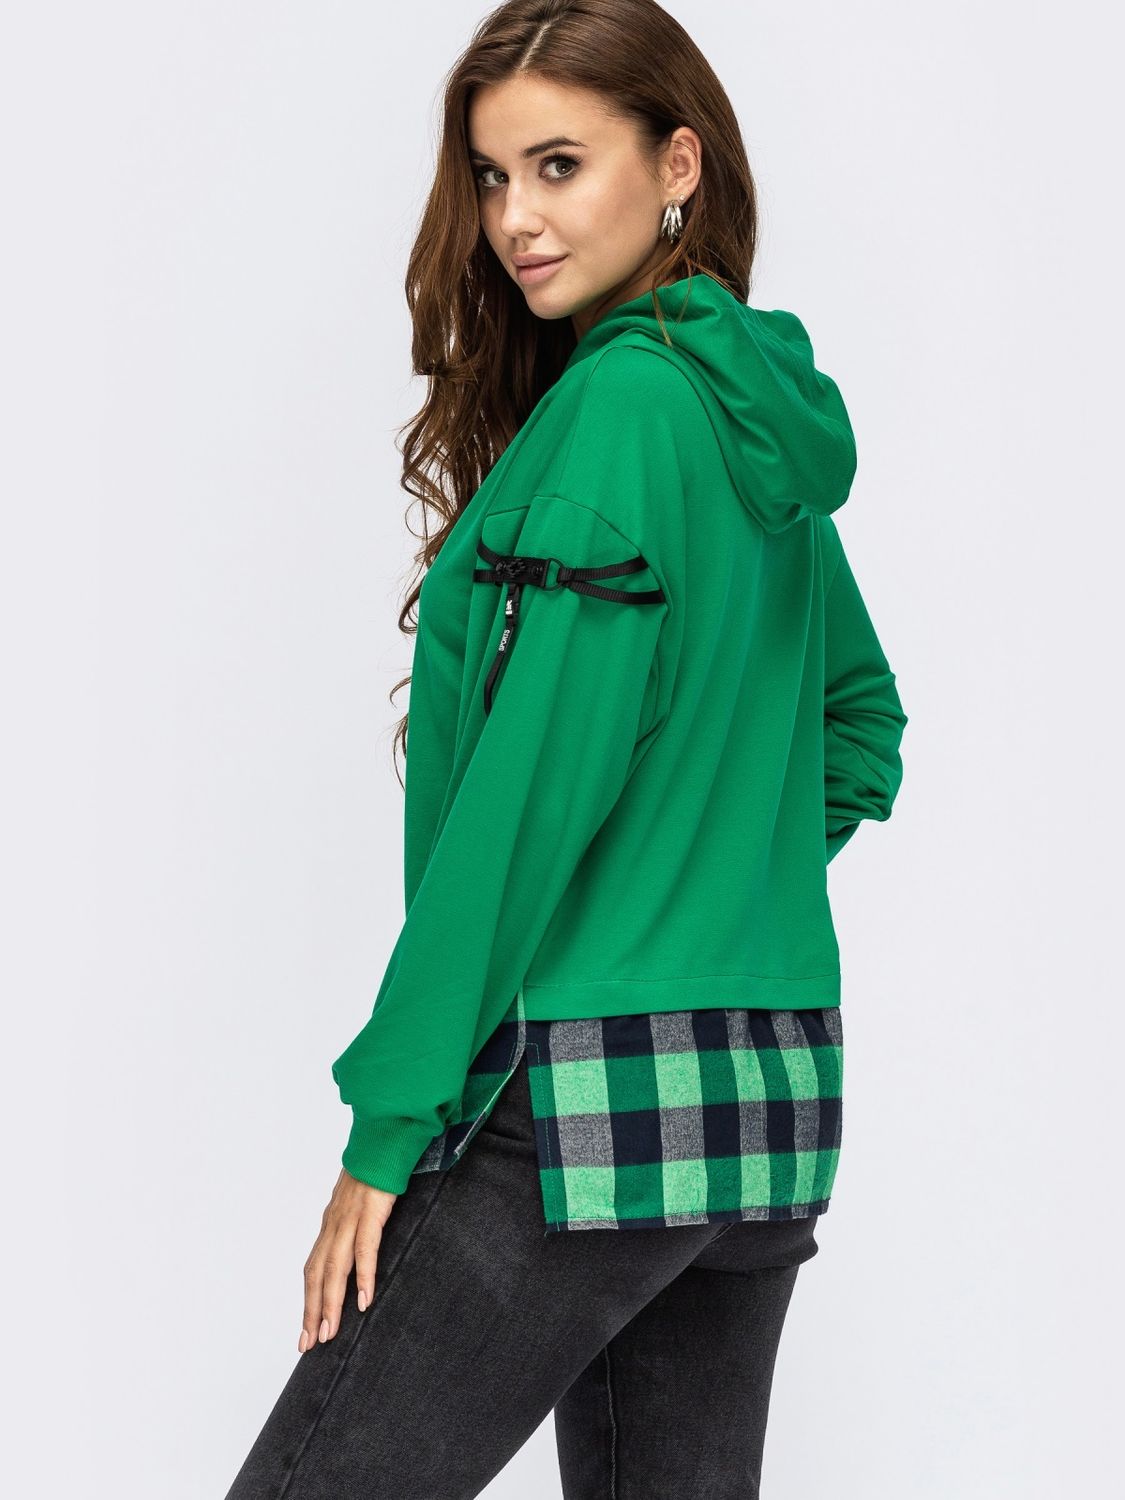 Жіночий худі з подовженою спинкою і капюшоном зелений - фото